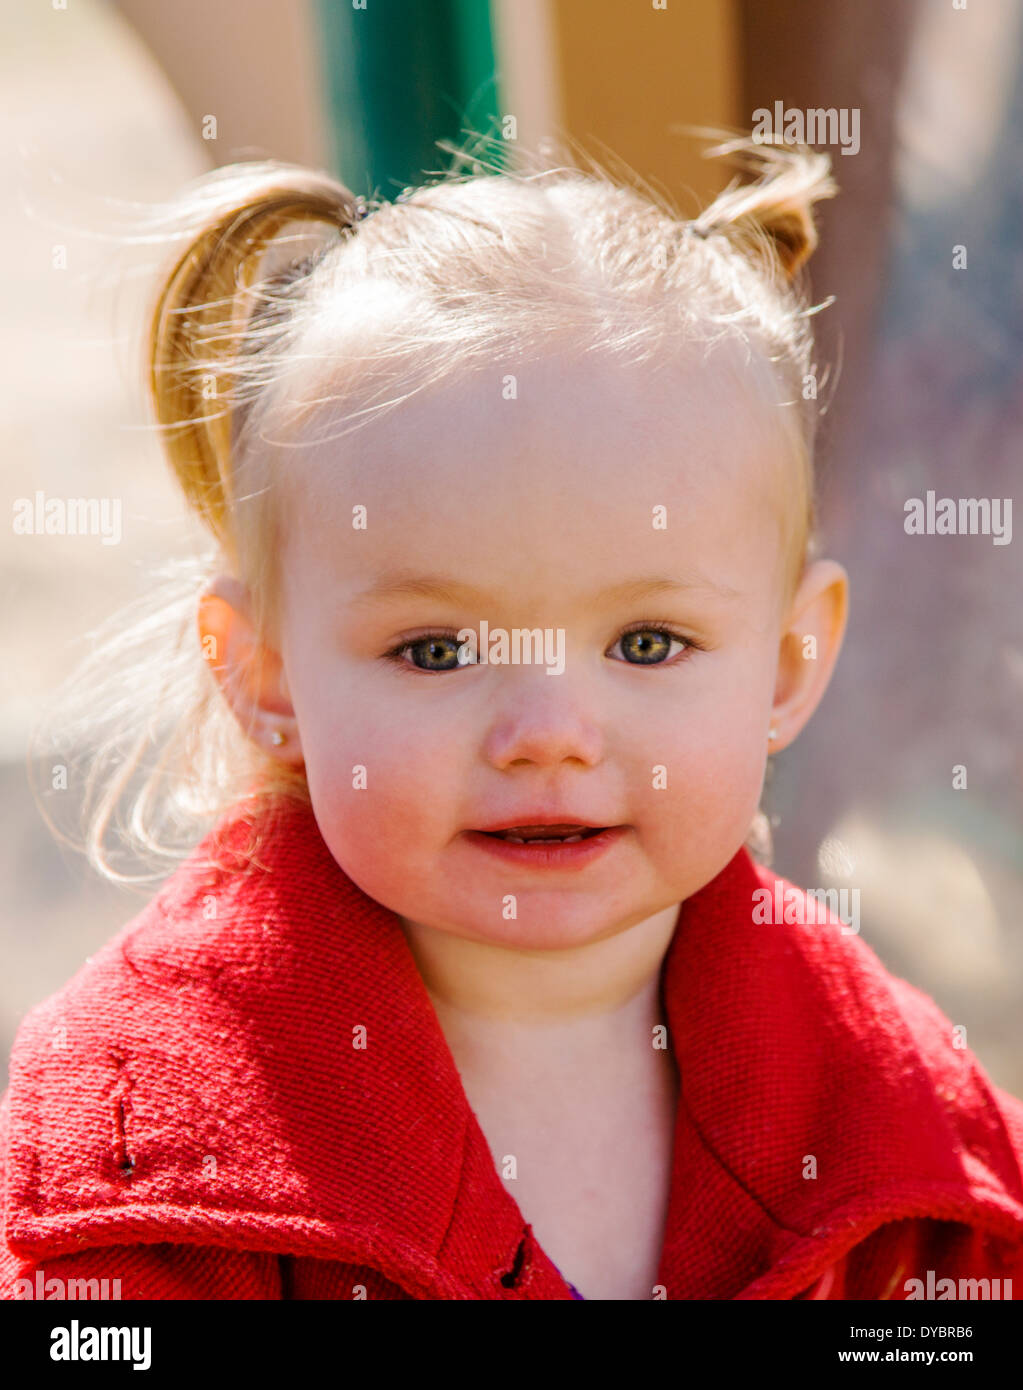 Mignon, adorable petite fille de 16 mois à l'affiche sur un parc jeux pour enfants Banque D'Images